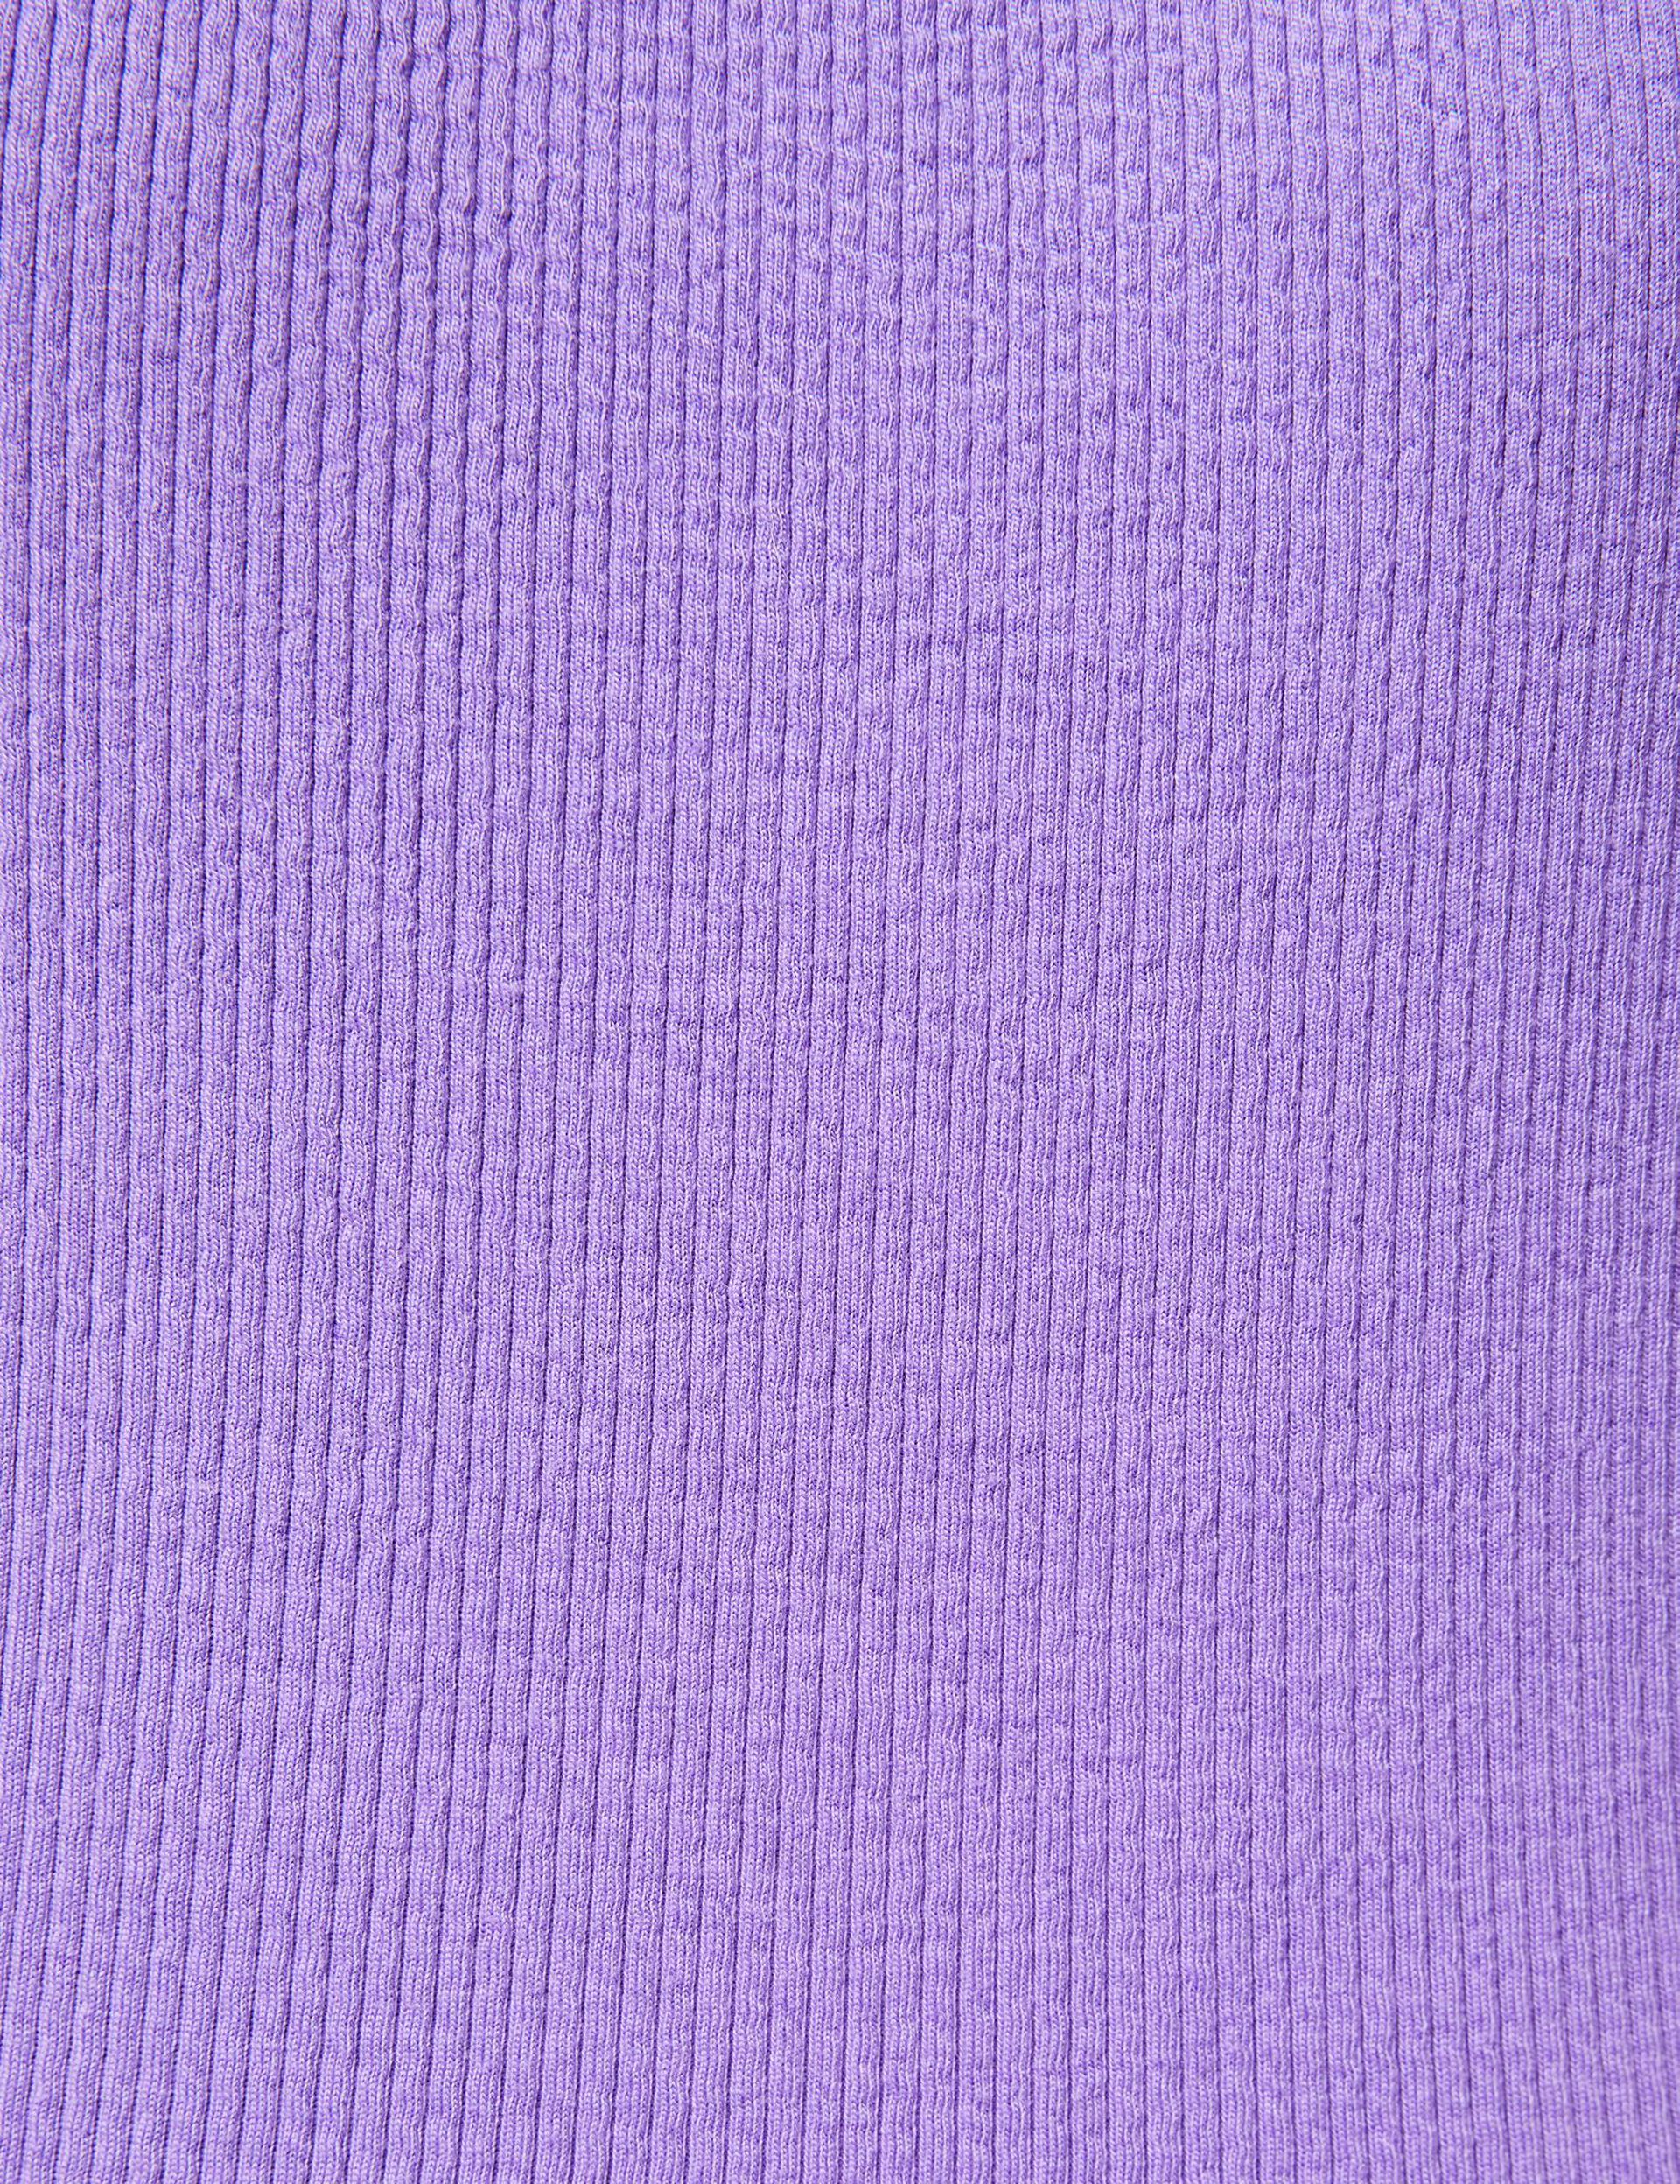 Tee-shirt violet col carré matière gaufrée